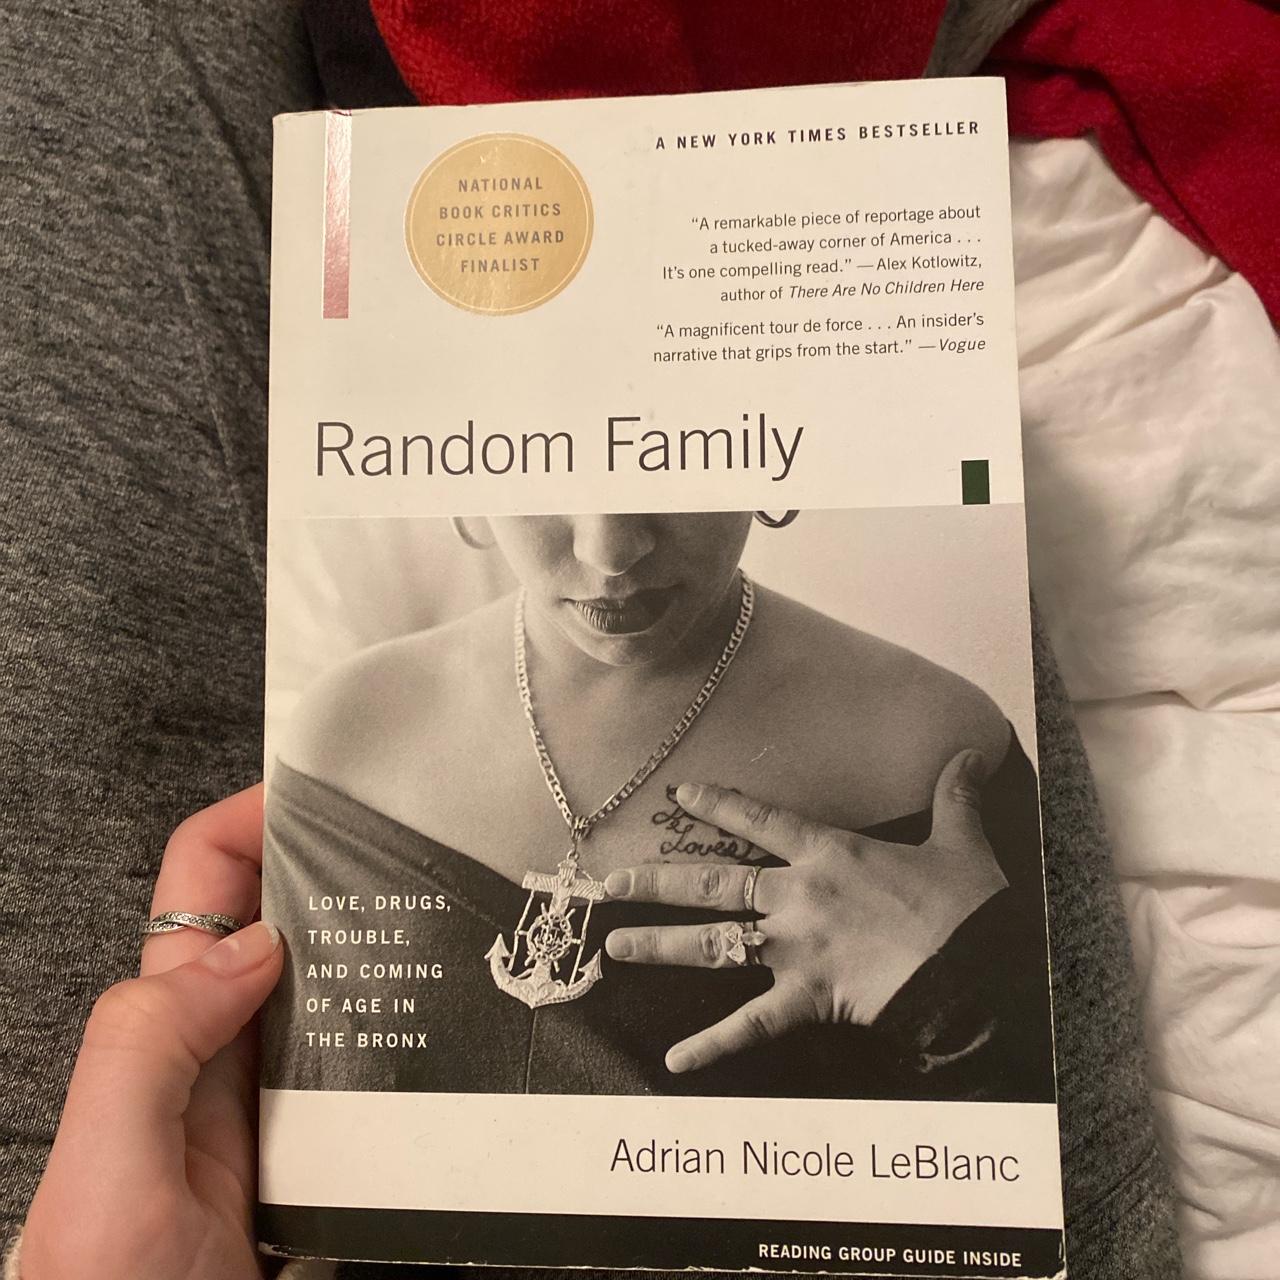 Product Image 1 - Random family book

#book #randomfamily #reading